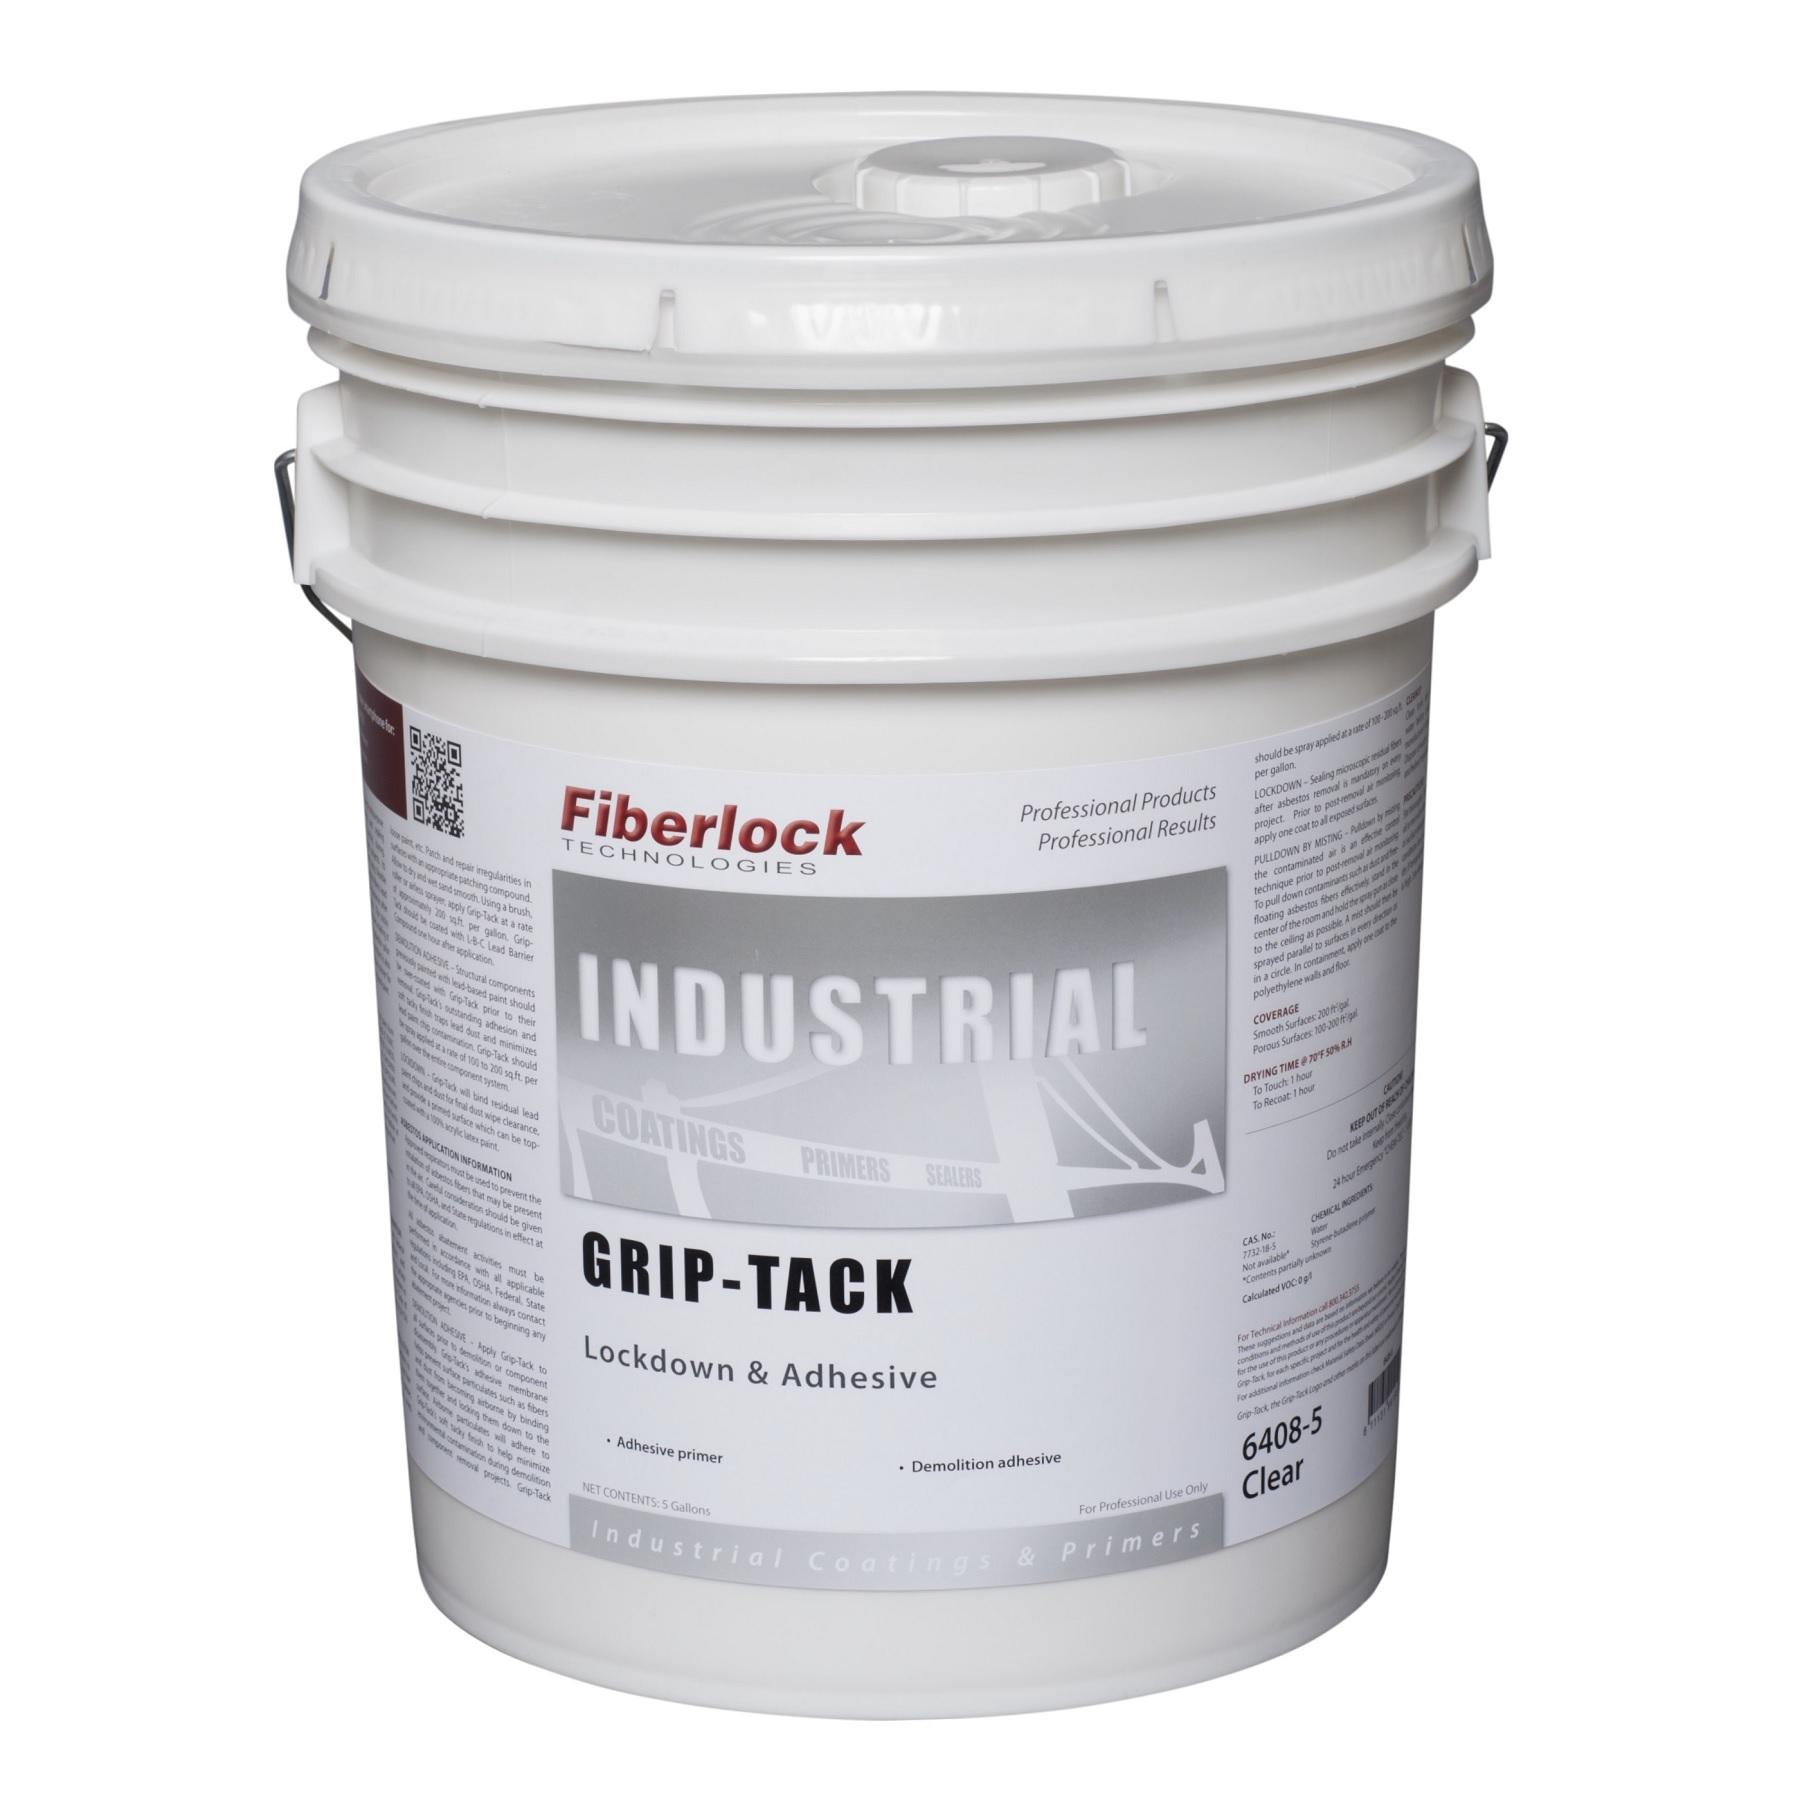 FIBERLOCK 6408-5 - Griptack Adhesive